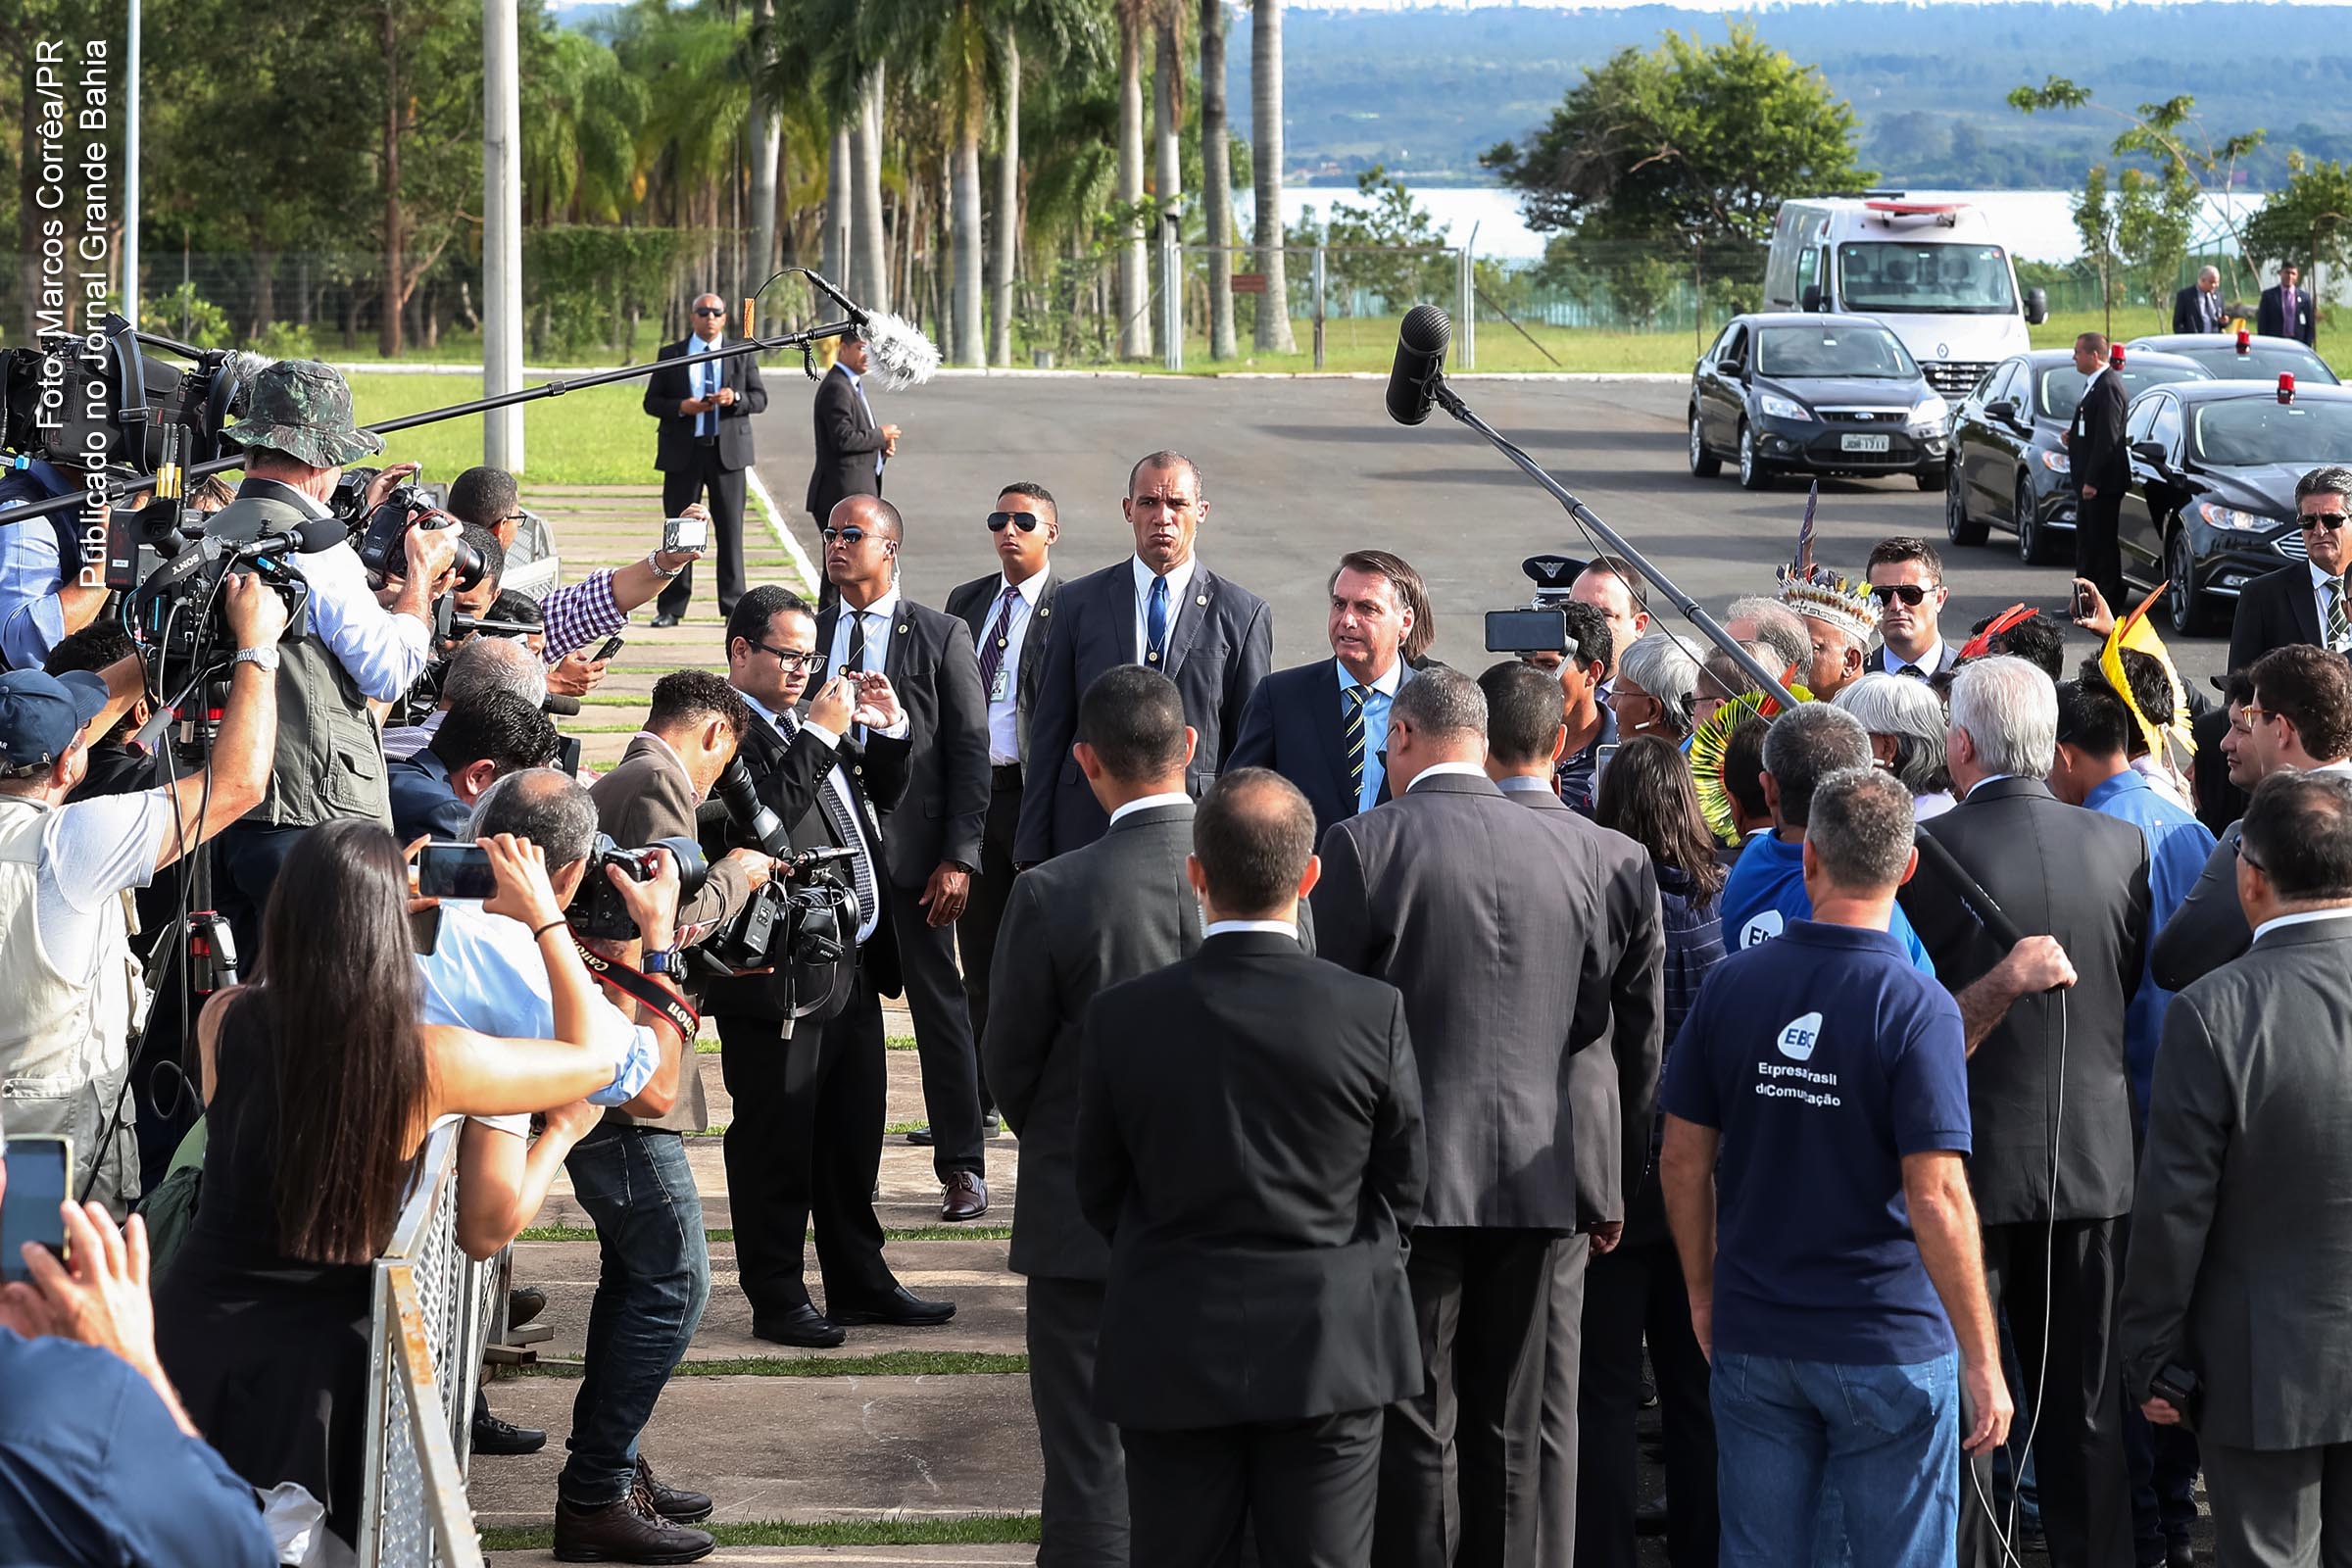 Presidente Jair Bolsonaro demonstra psicopatia e evidencia comportamento incompatível com a função publica.